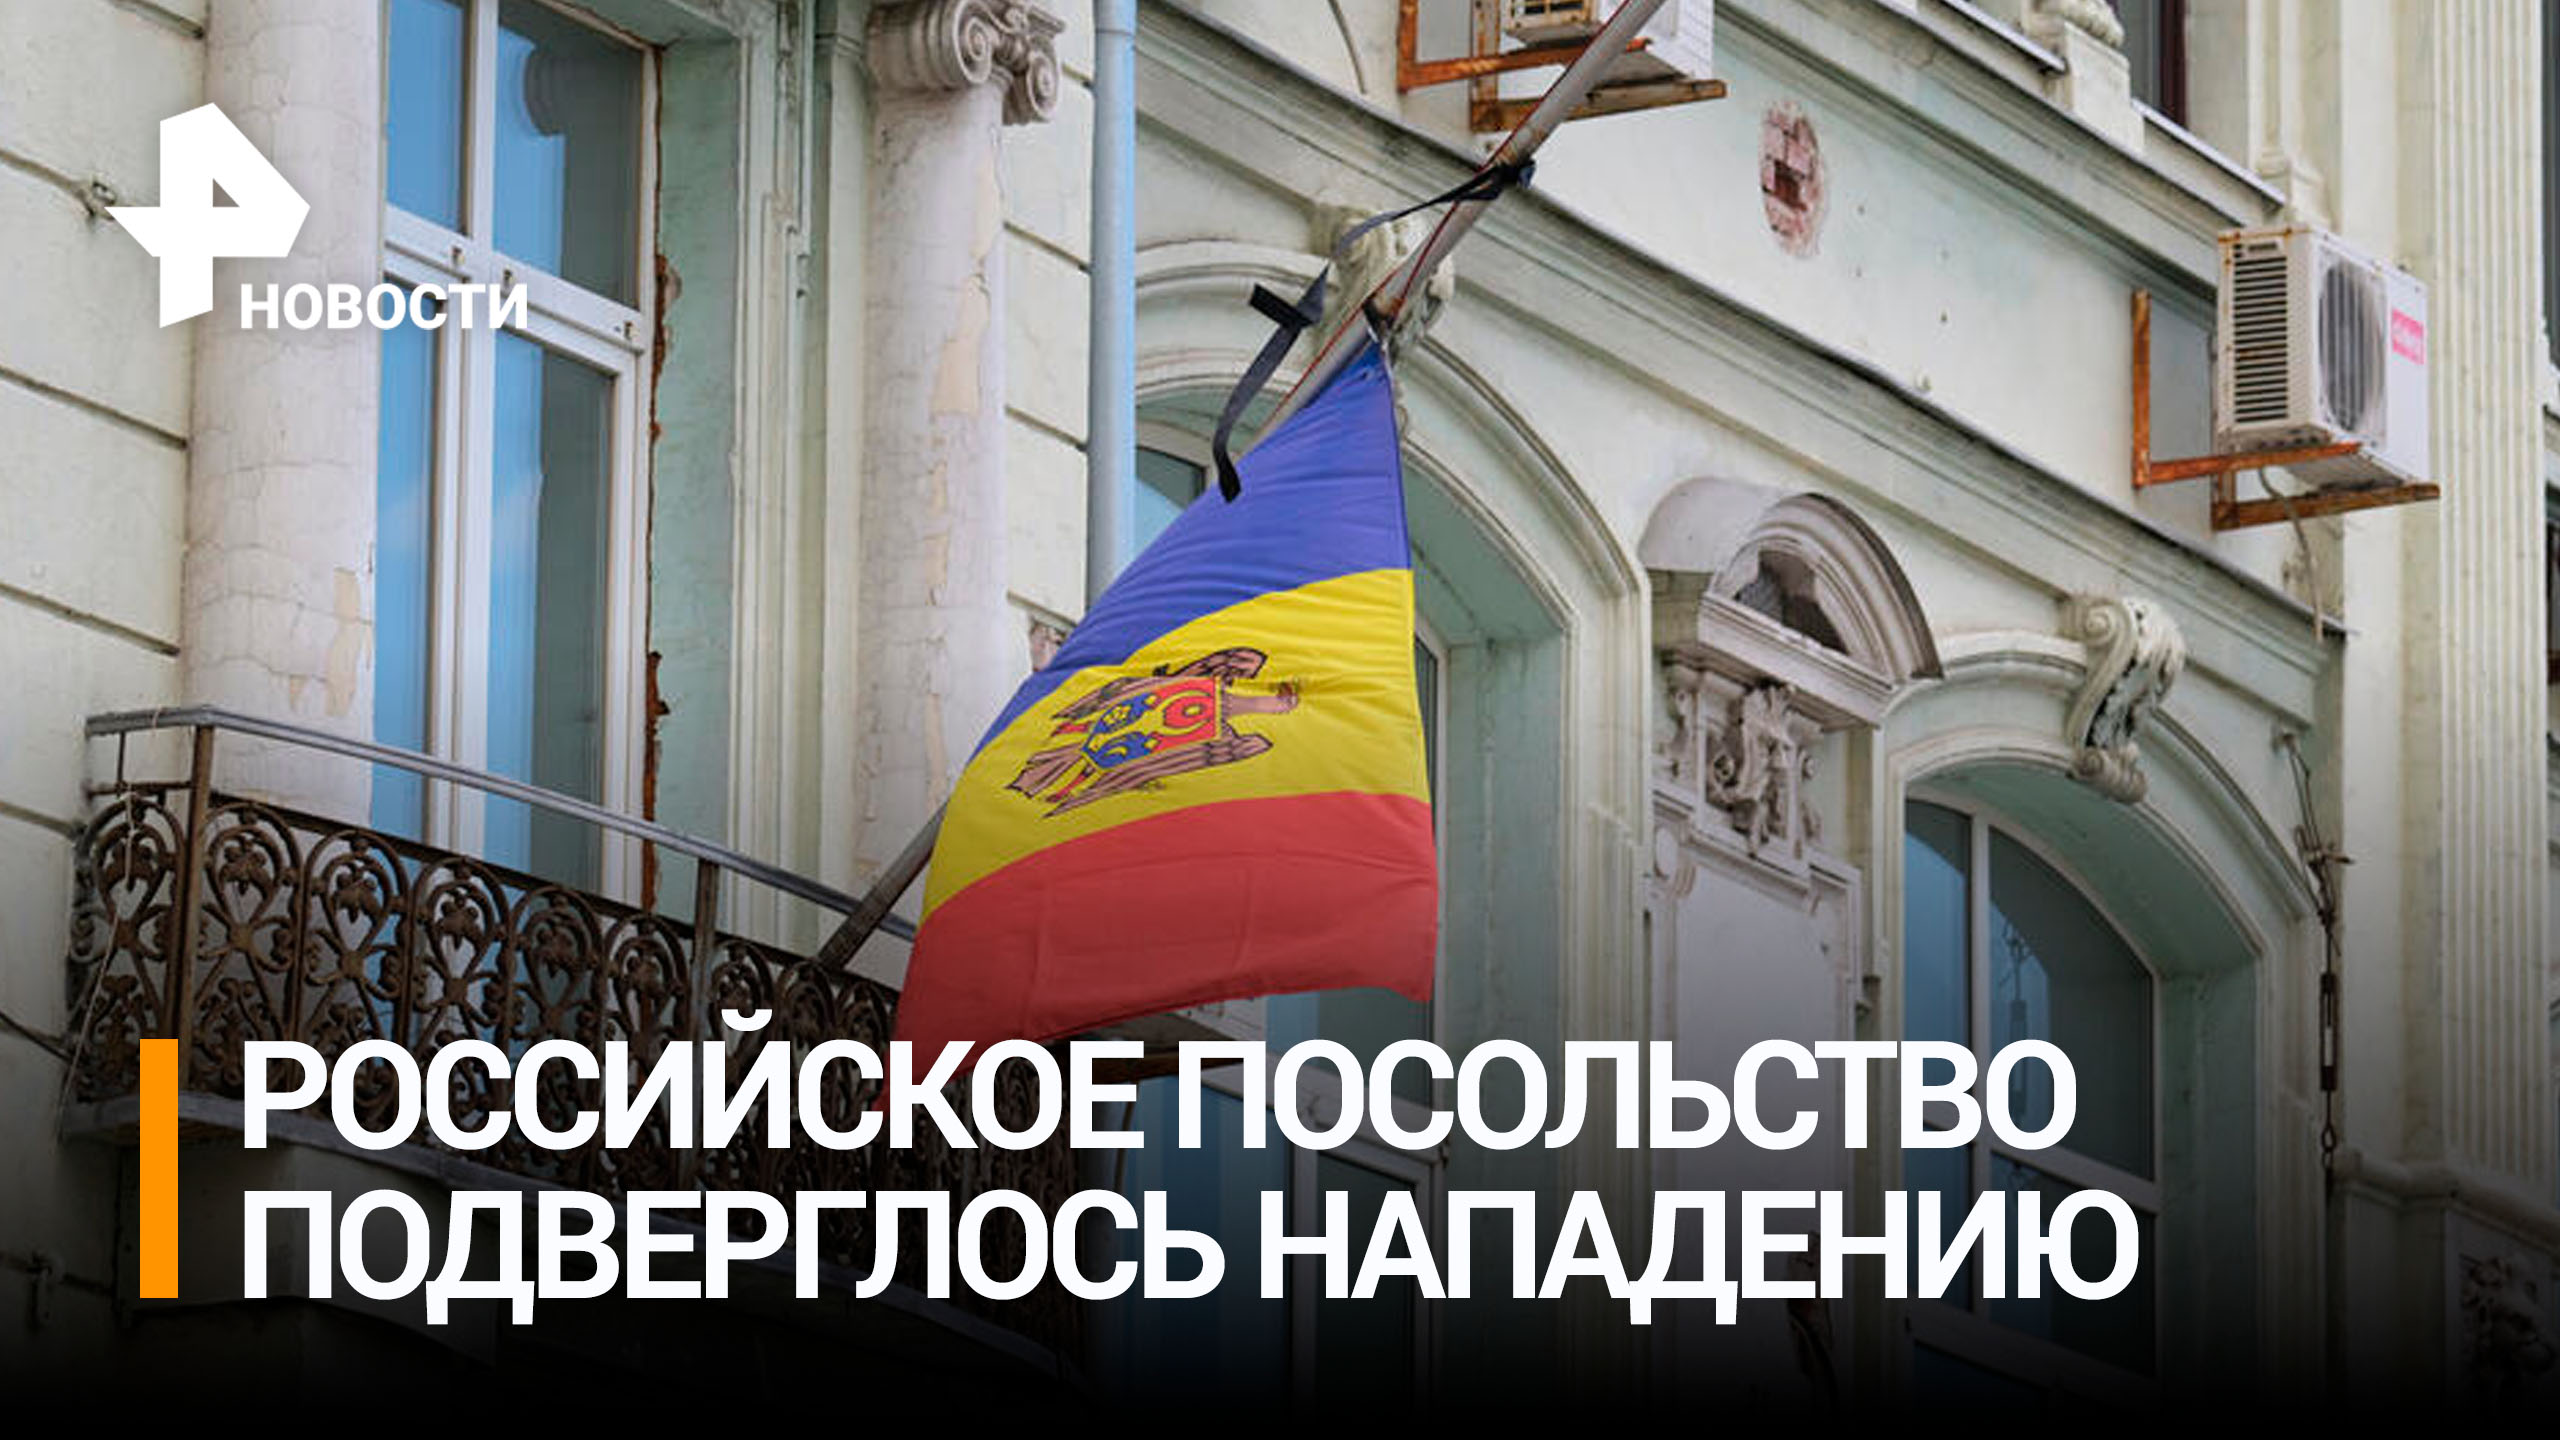 Водитель протаранил ворота российского посольства в Кишиневе / РЕН Новости